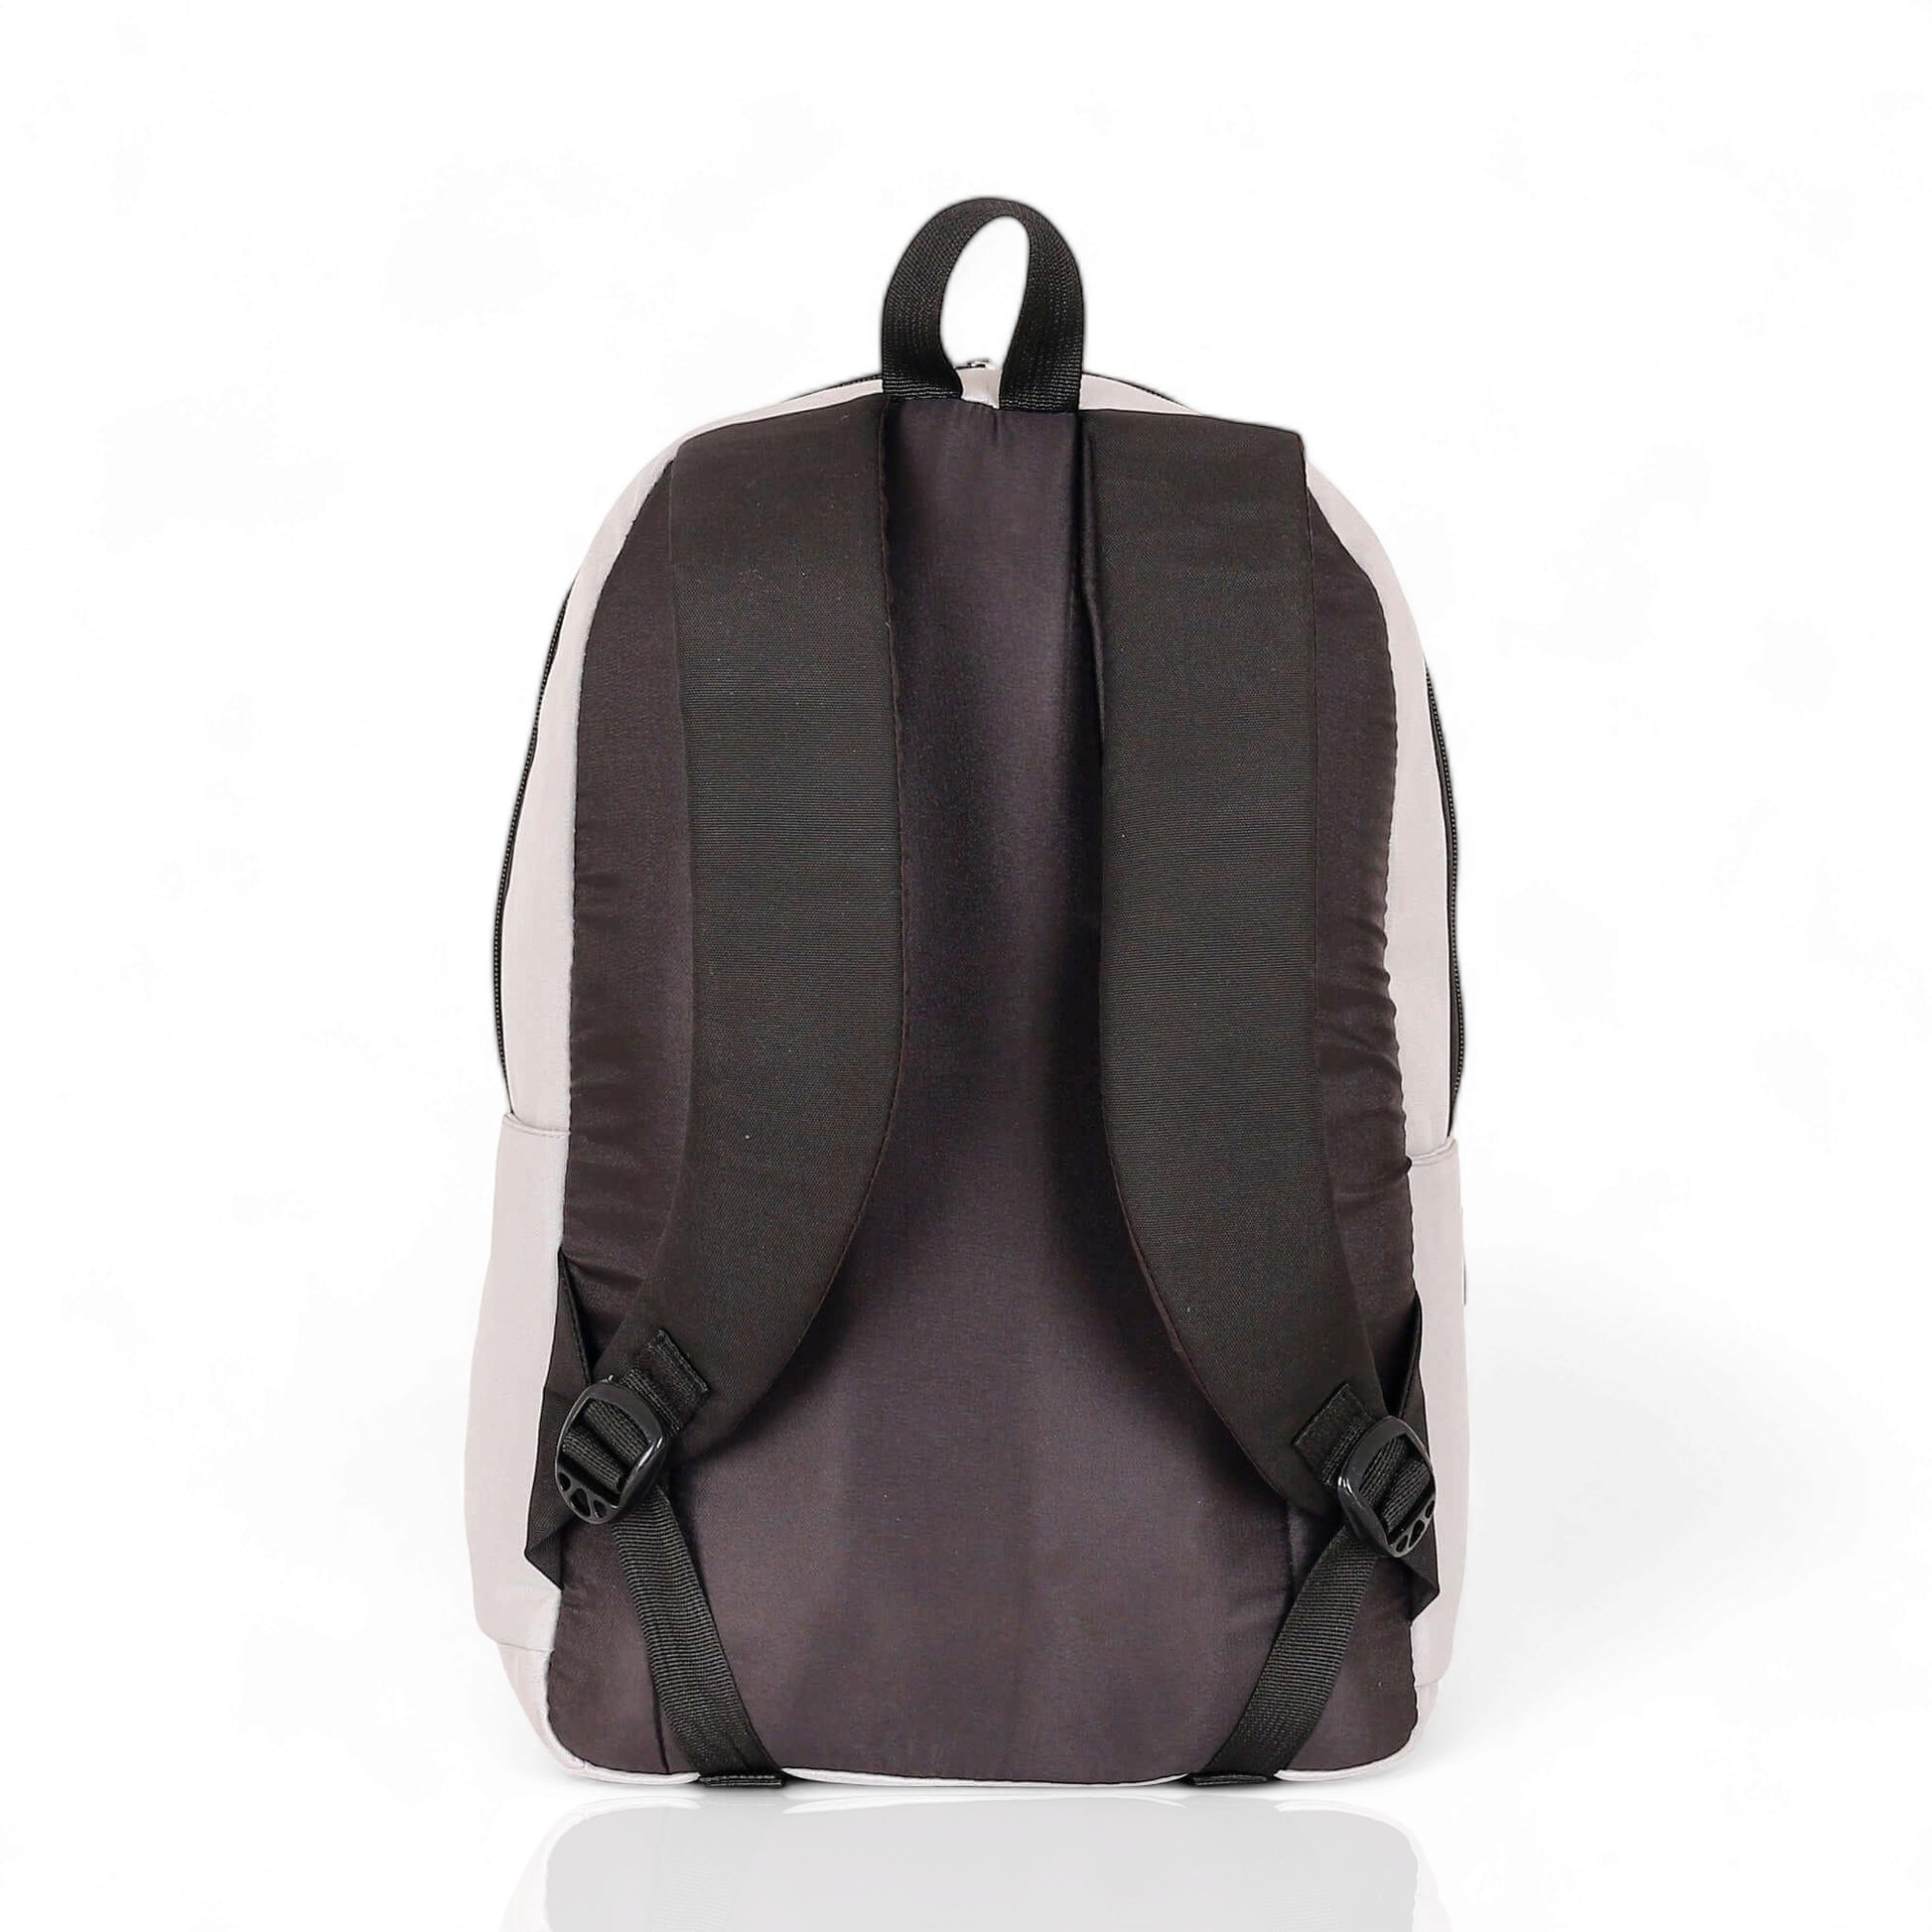 Force Basic Backpack for Unisex, Light Gray FDB-20-16